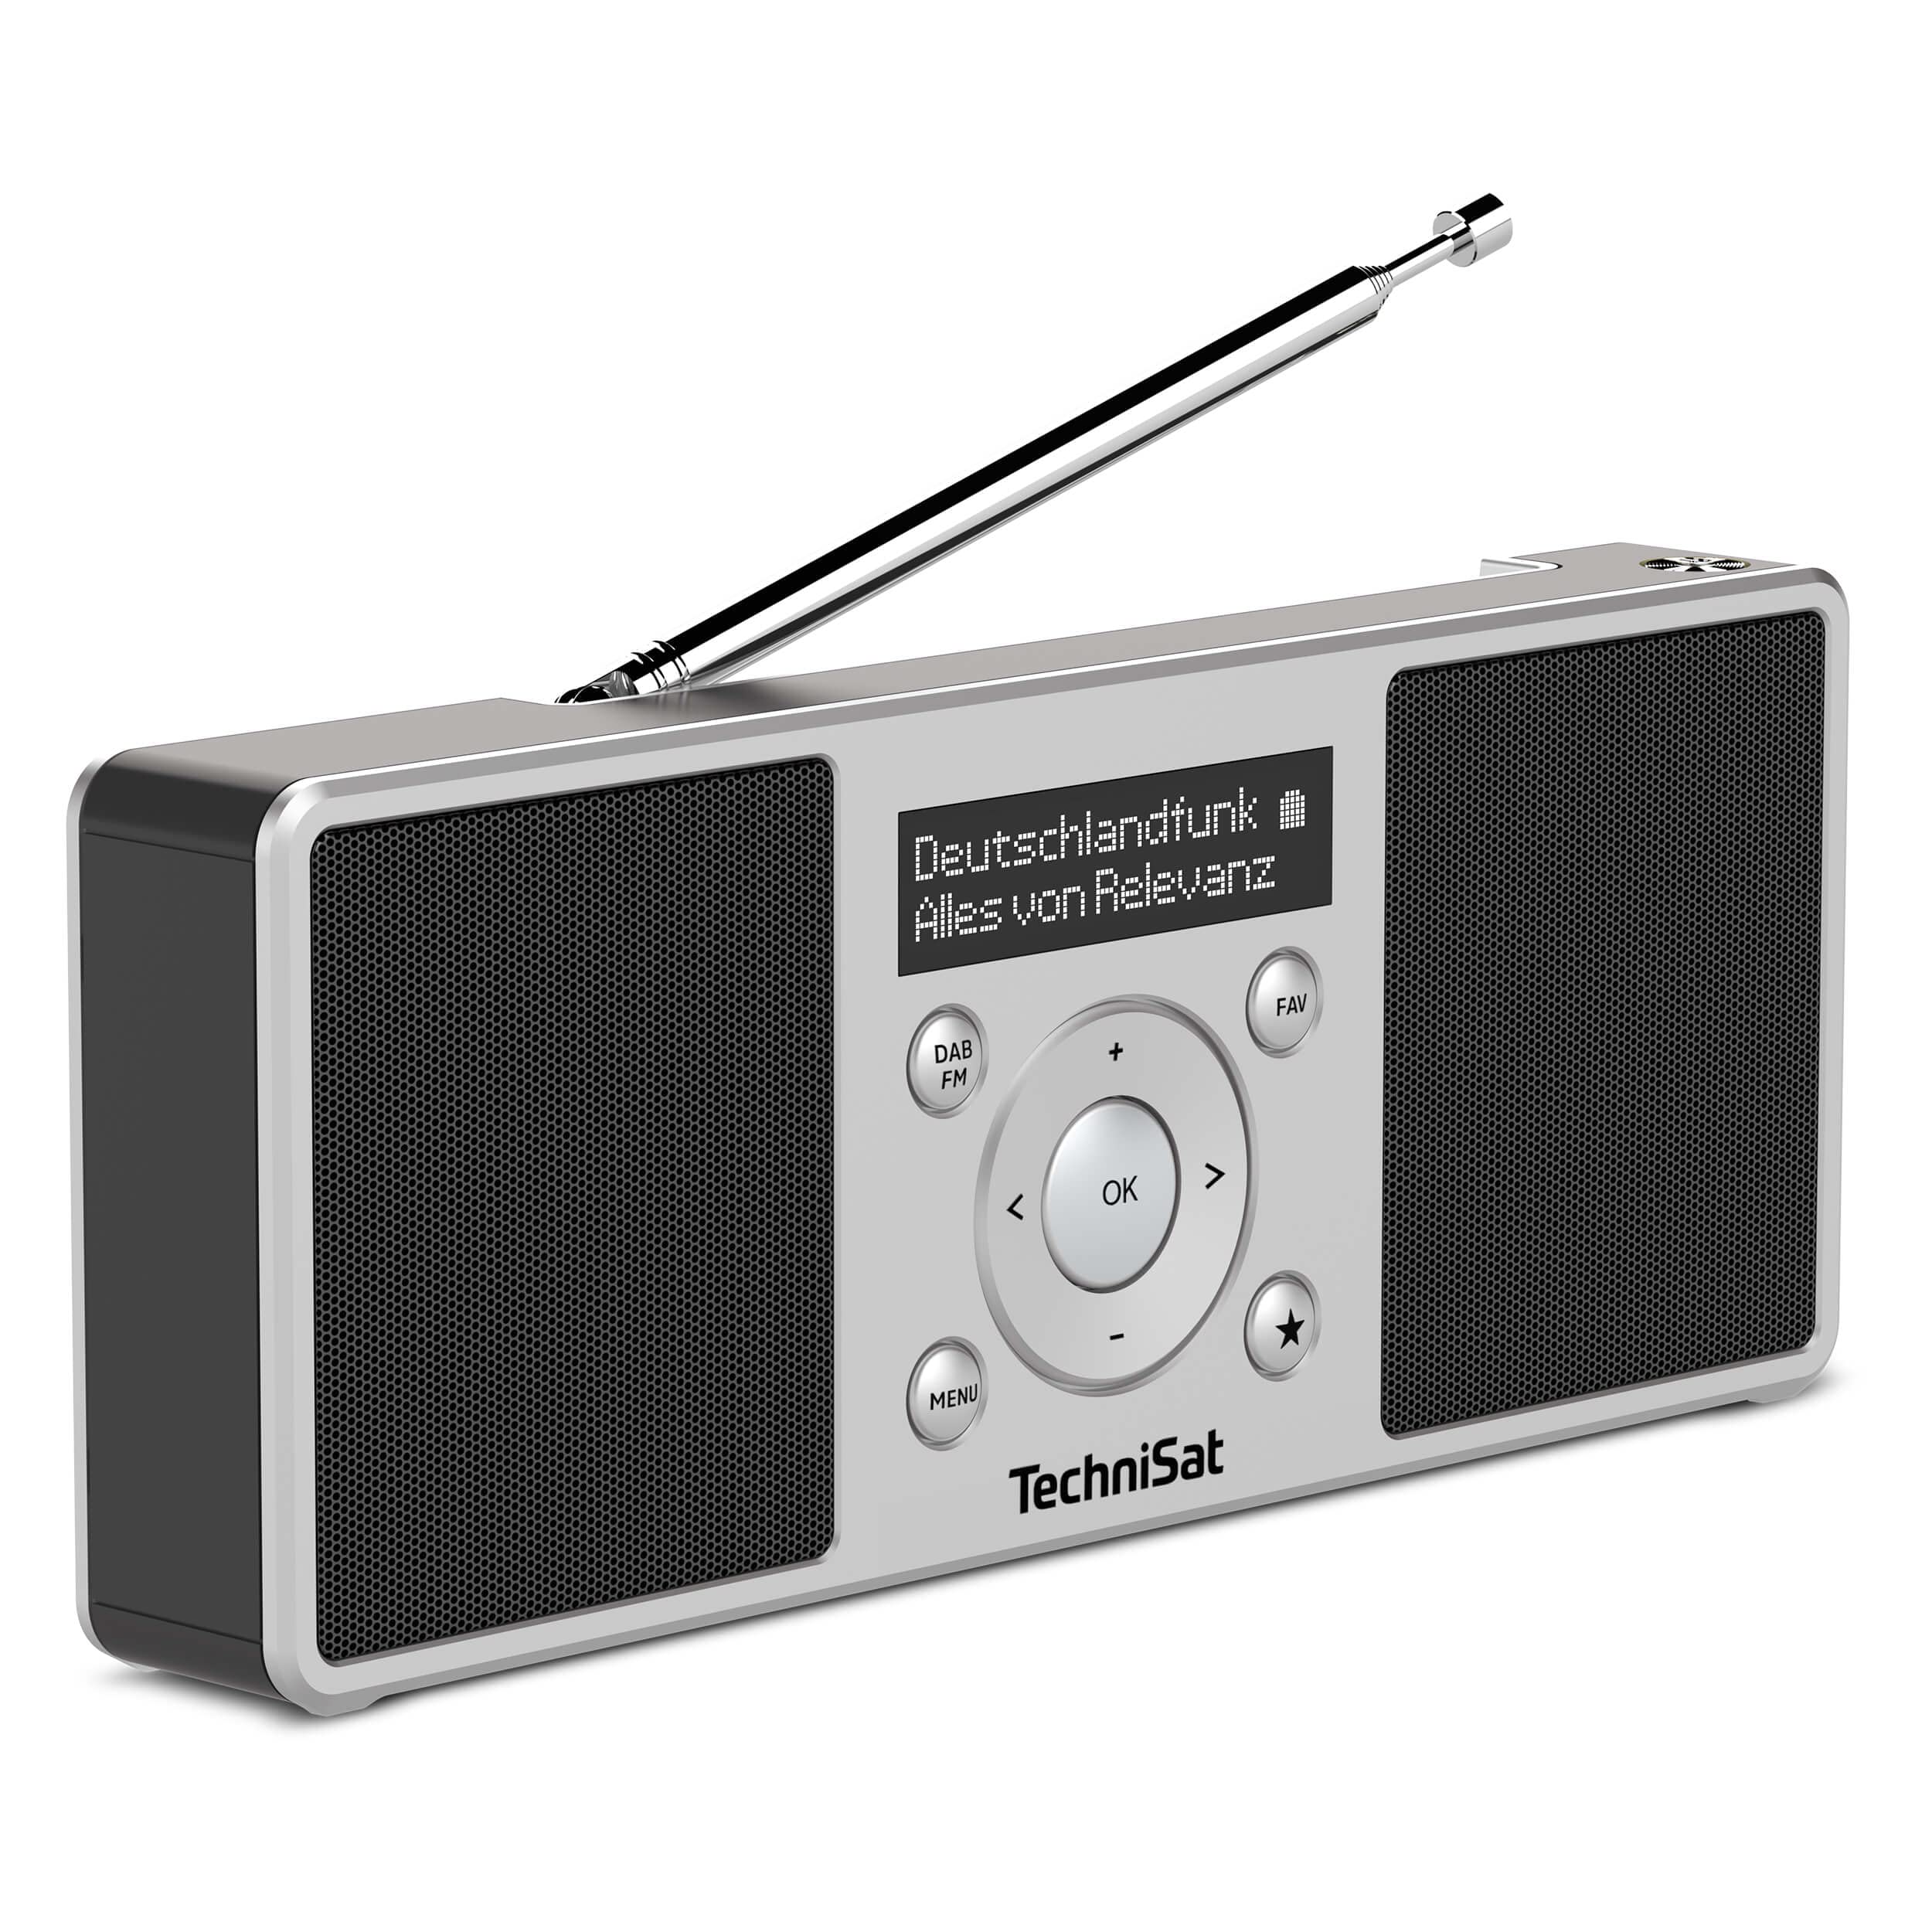 TechniSat DIGITRADIO 1 S - tragbares Stereo DAB Radio mit Akku (DAB+, UKW, FM, Lautsprecher, Kopfhörer-Anschluss, Favoritenspeicher, OLED-Display, 2 W RMS) silber/schwarz